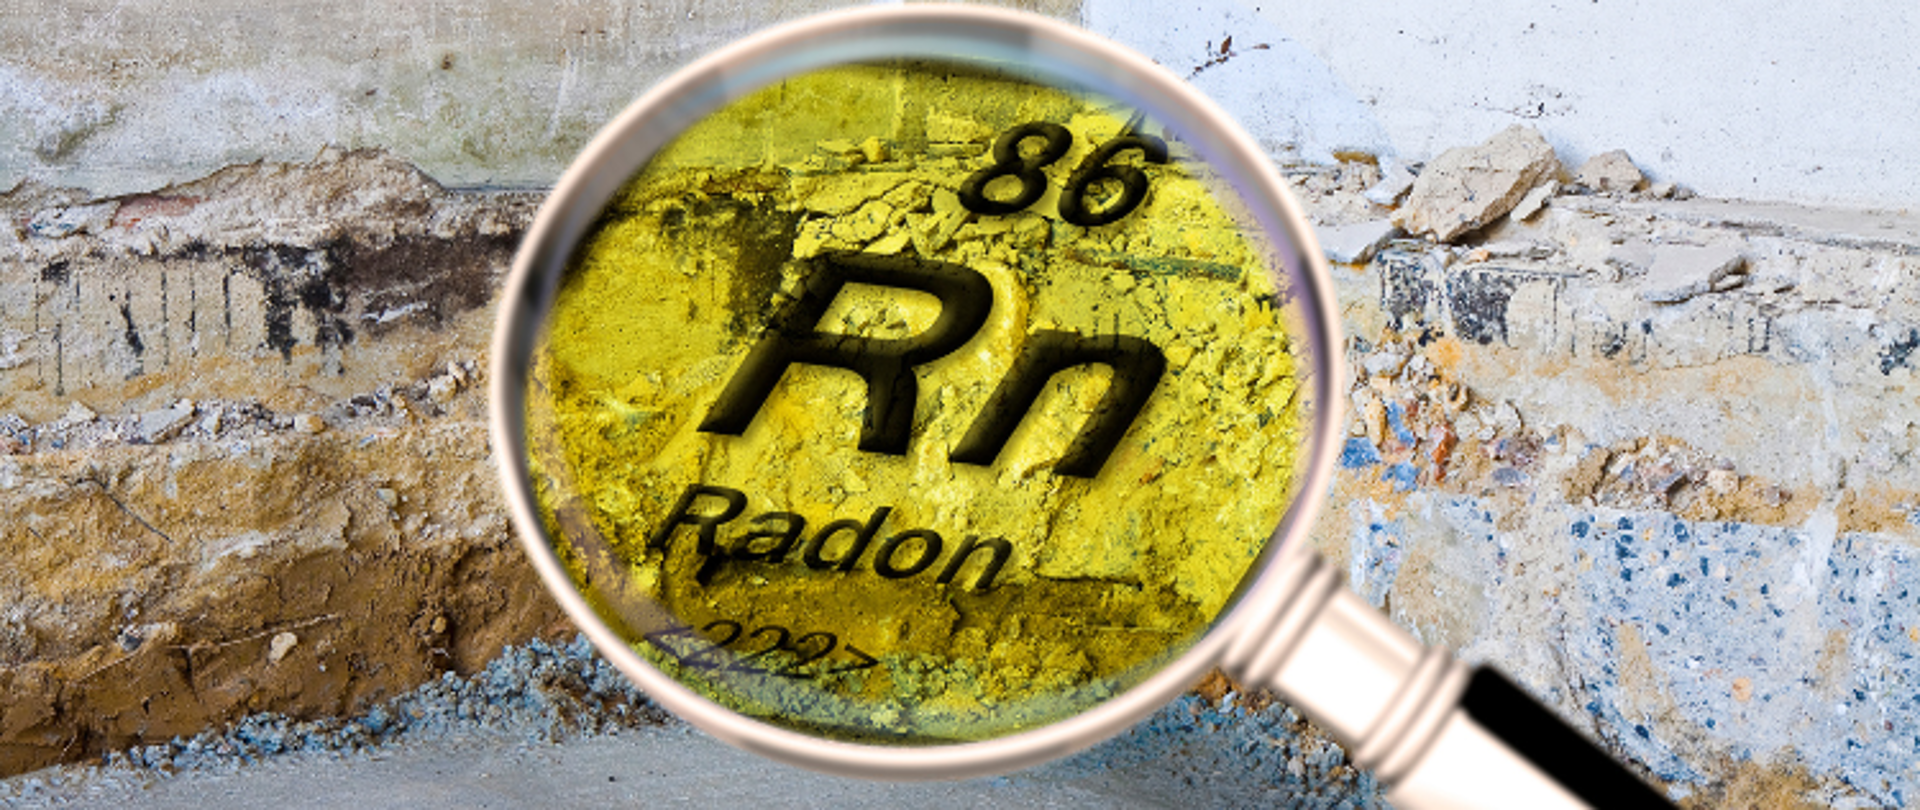 Napis pod lupą 86 Rn Radon